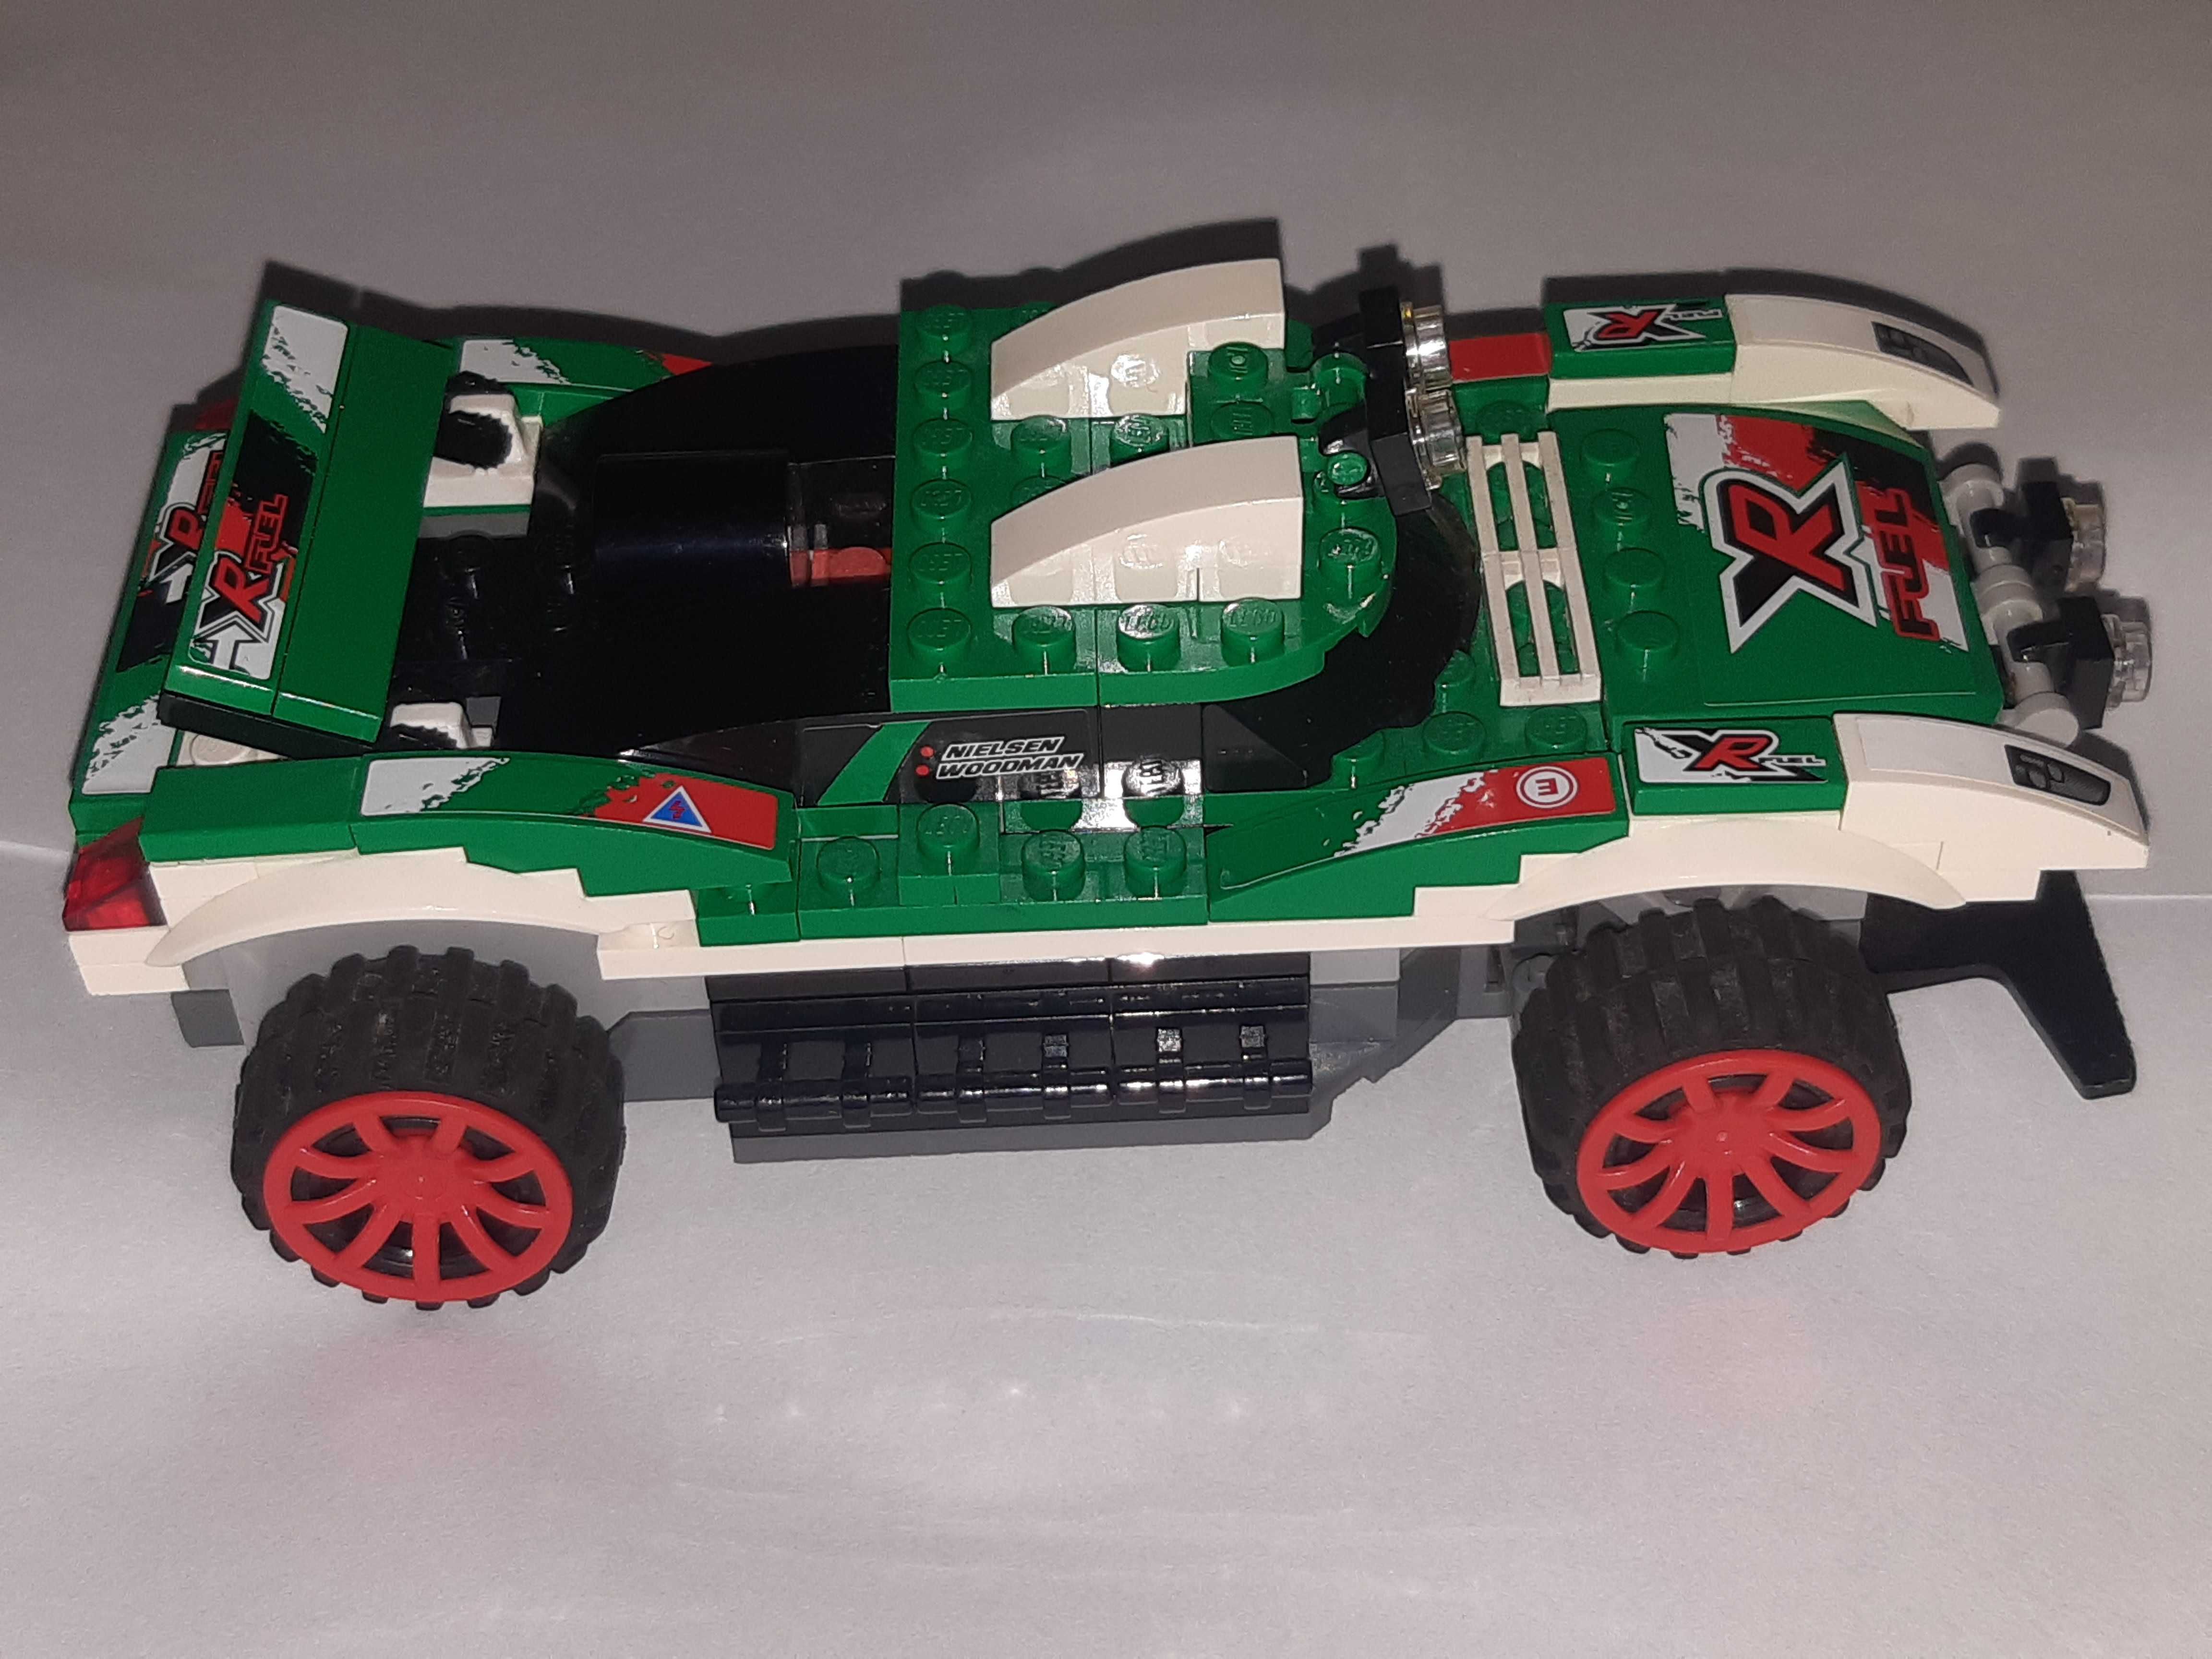 Lego samochód zdalnie sterowany jak na foto sprawny